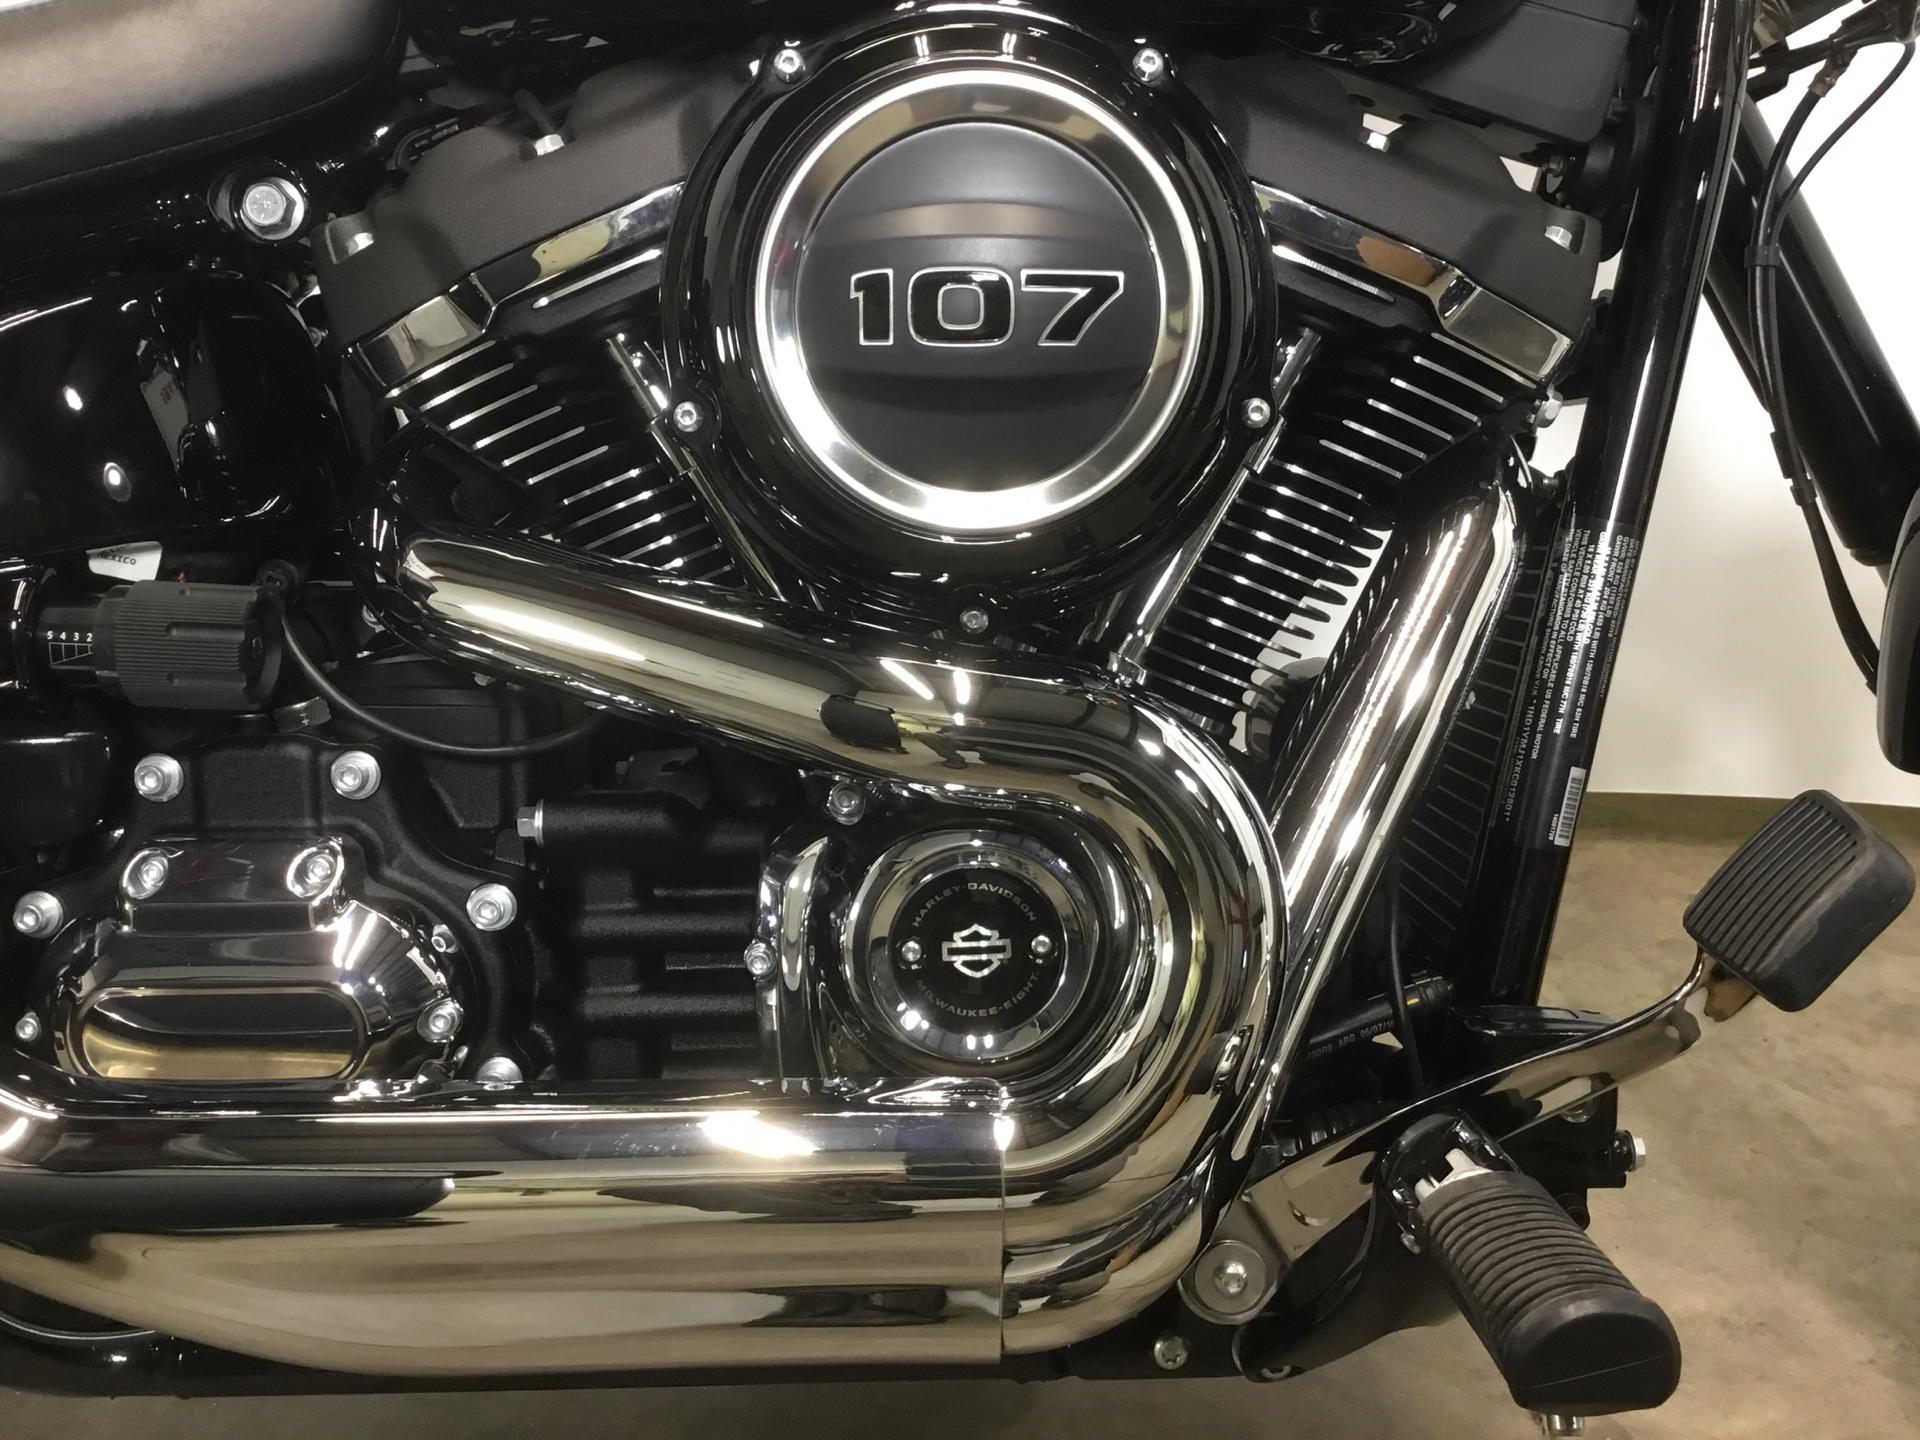 Pre-Owned 2019 Harley-Davidson Sport Glide FLSB